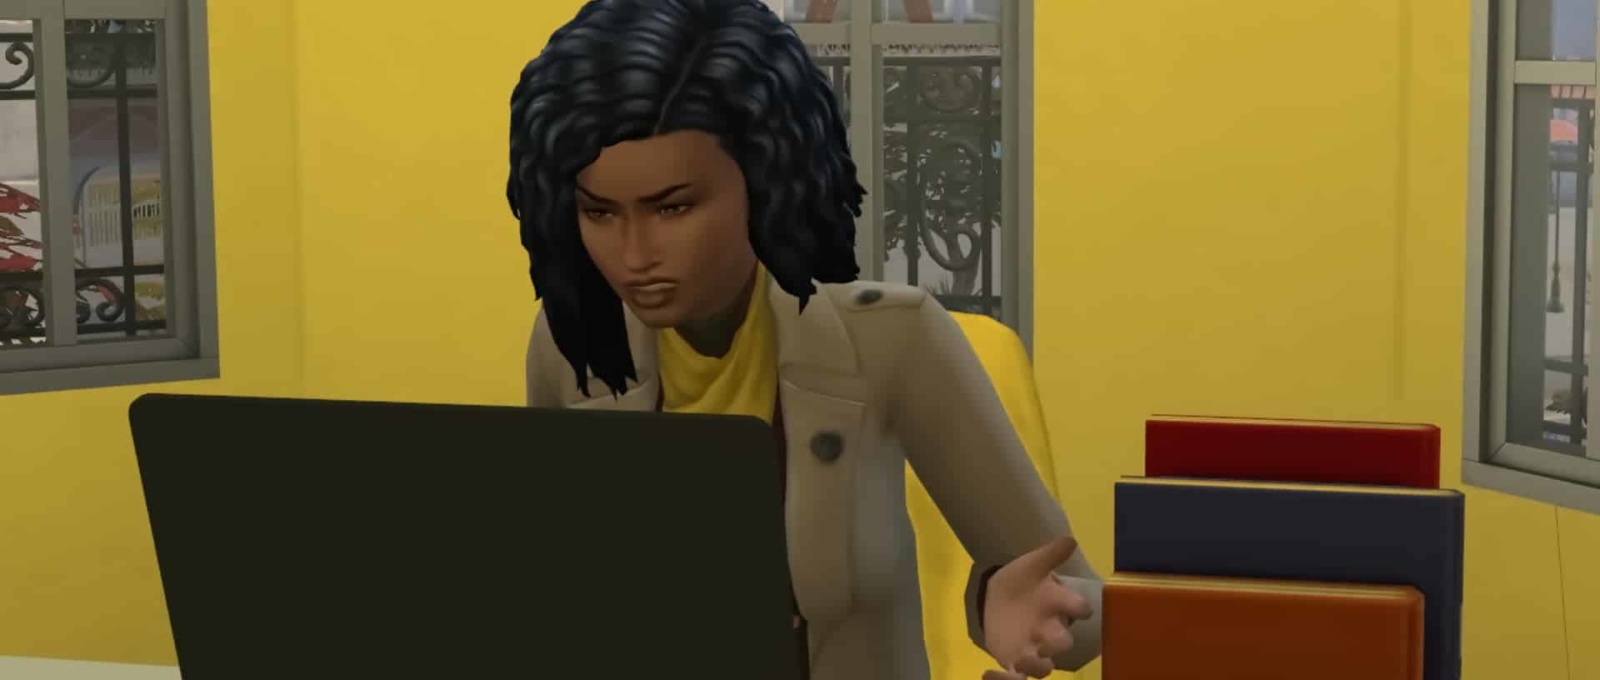 Sims 4 Keeps Crashing 1